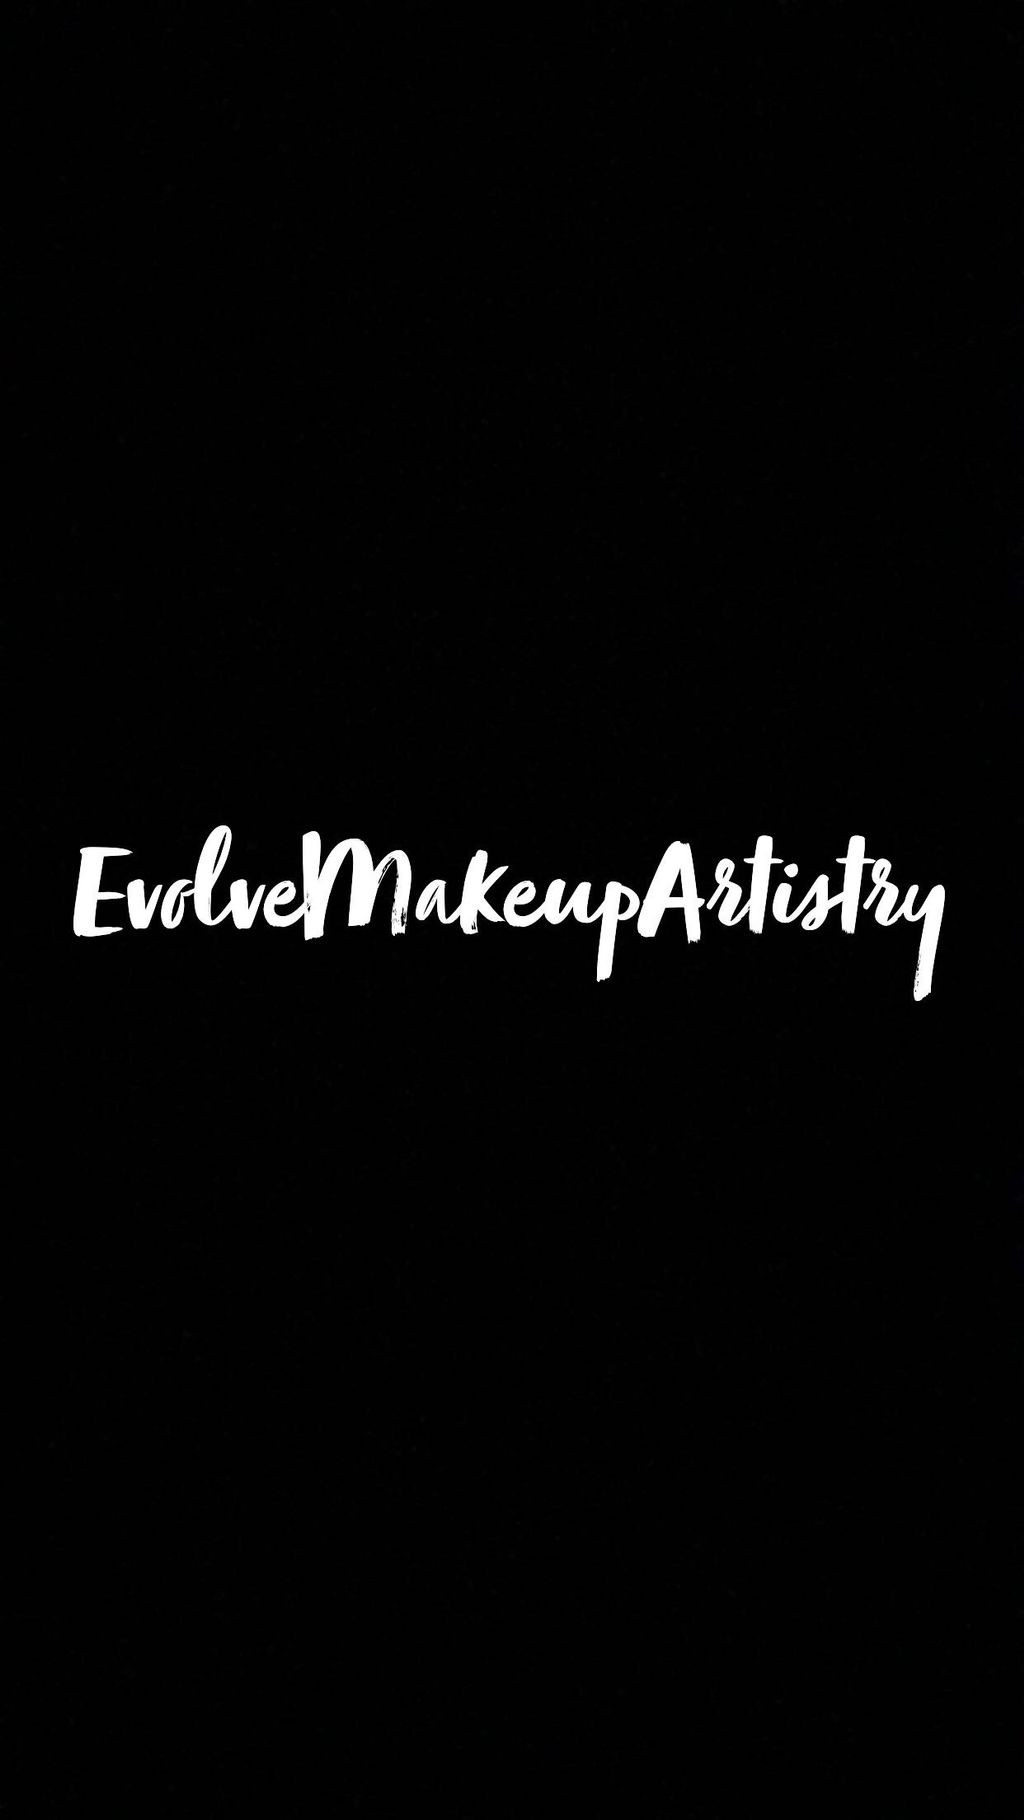 Evolve Makeup Artistry